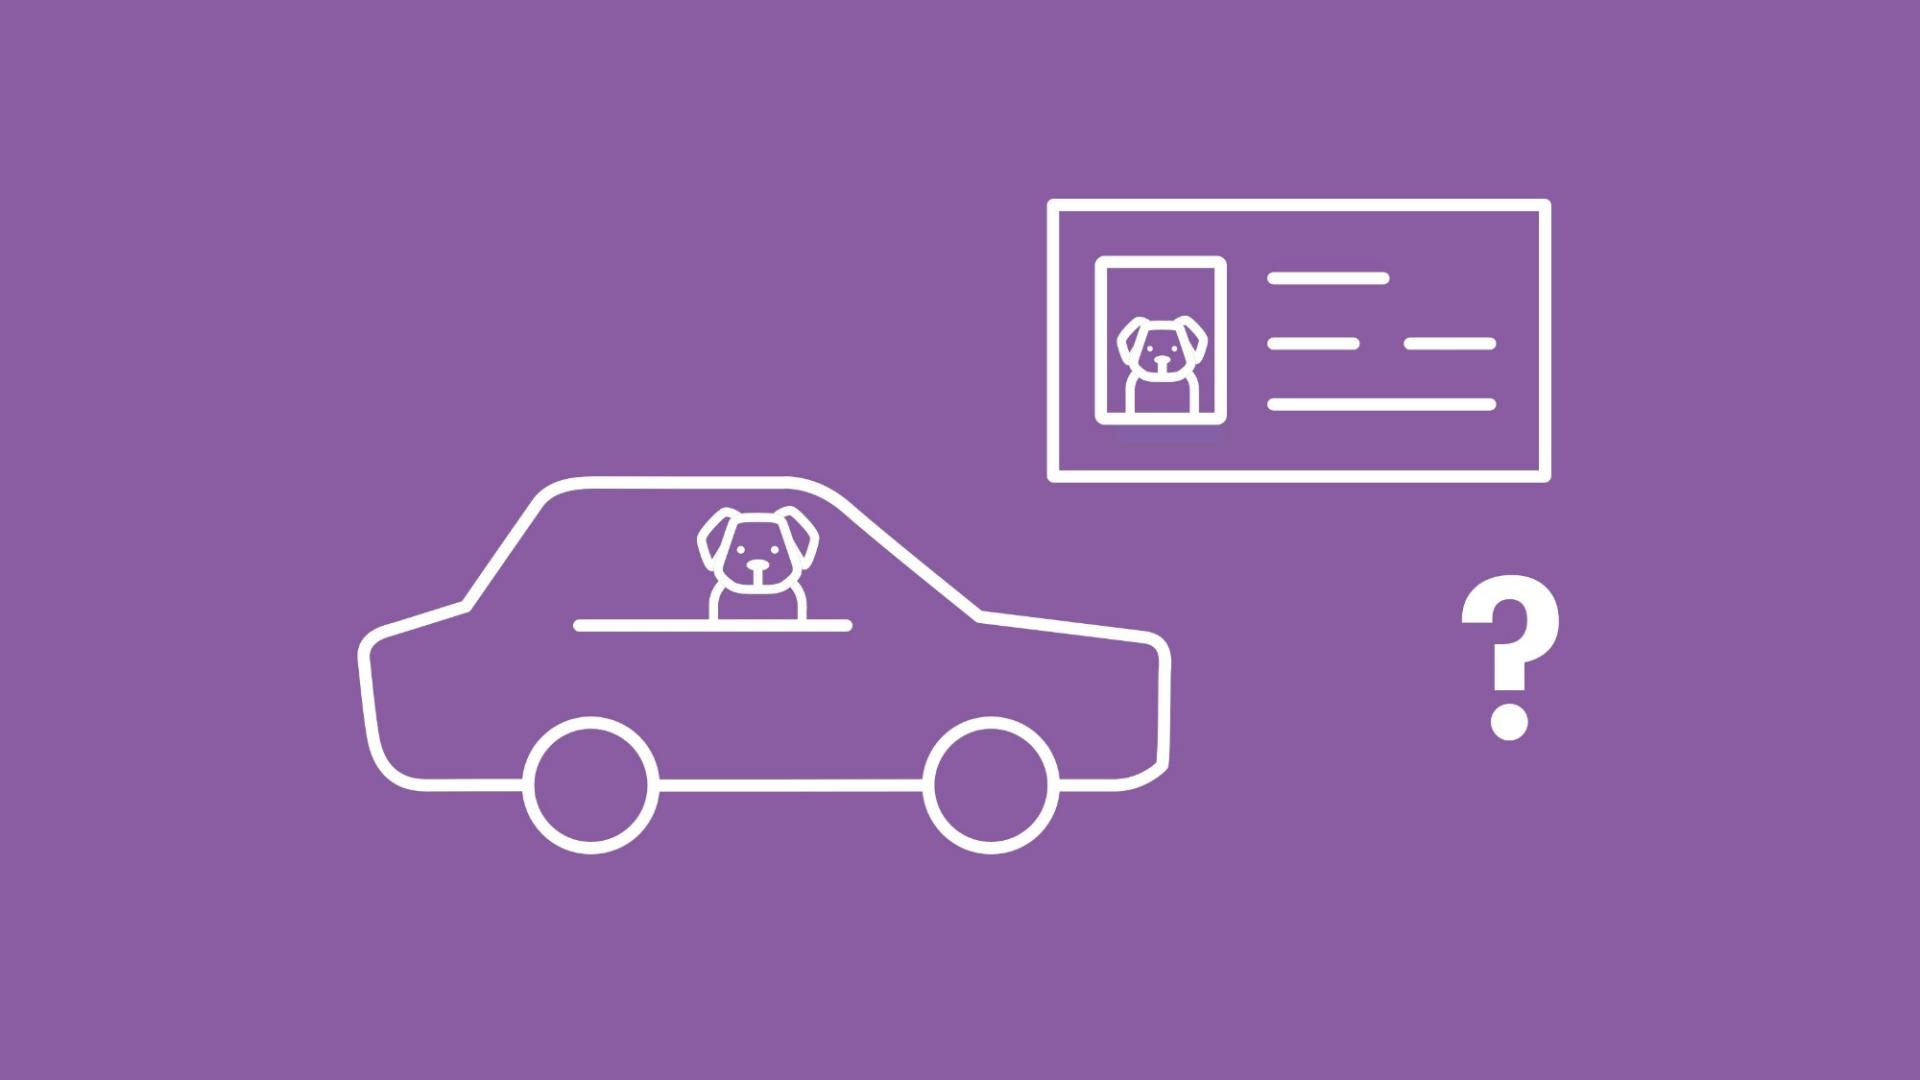 Die Grafik zeigt einen Hund in einem Auto. Daneben ist ein Führerschein mit dem Bild des Hundes und ein Fragezeichen zu sehen. 